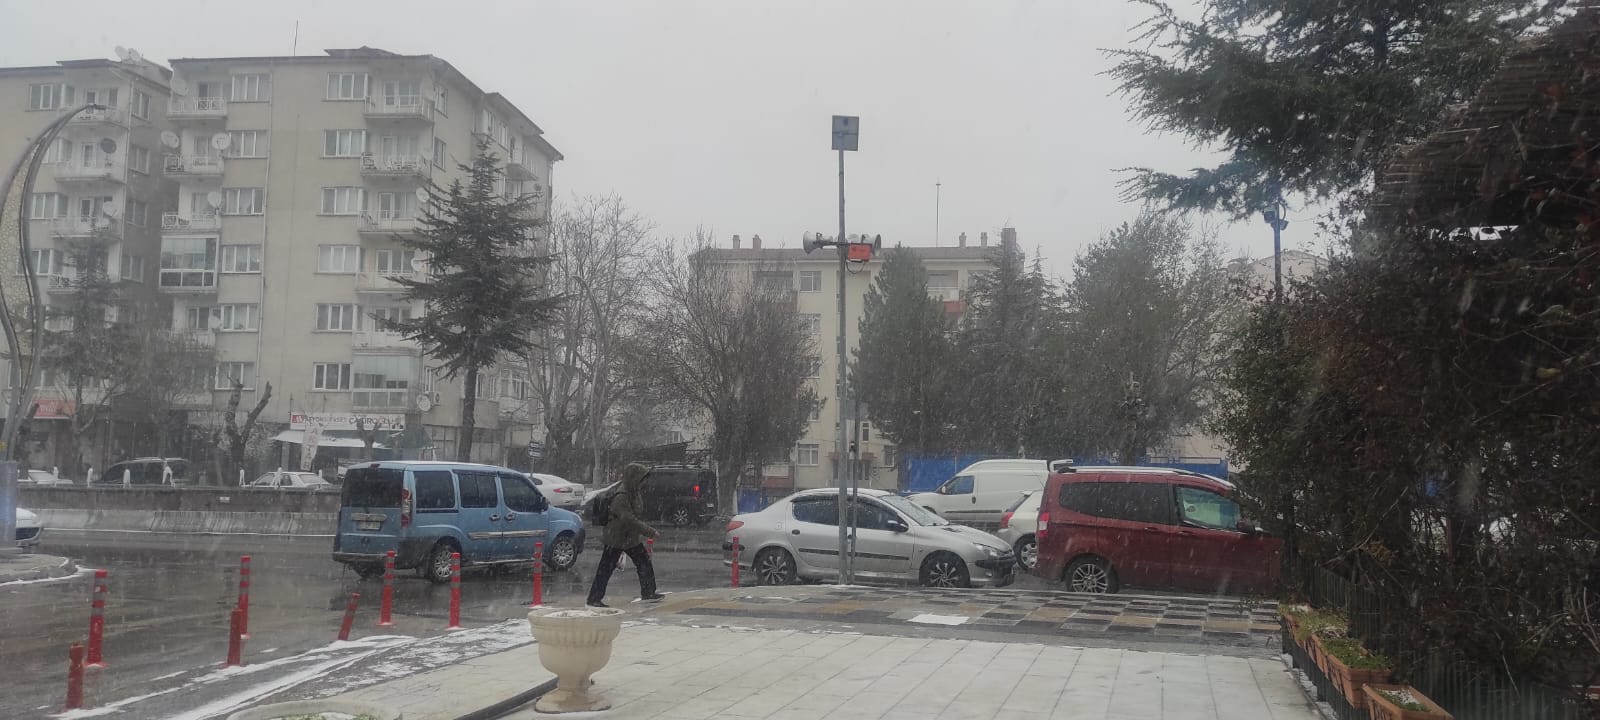 Mart kapıdan baktırır kazma kürek yaktırır: Afyonkarahisar'da Kar Yağışı başladı!